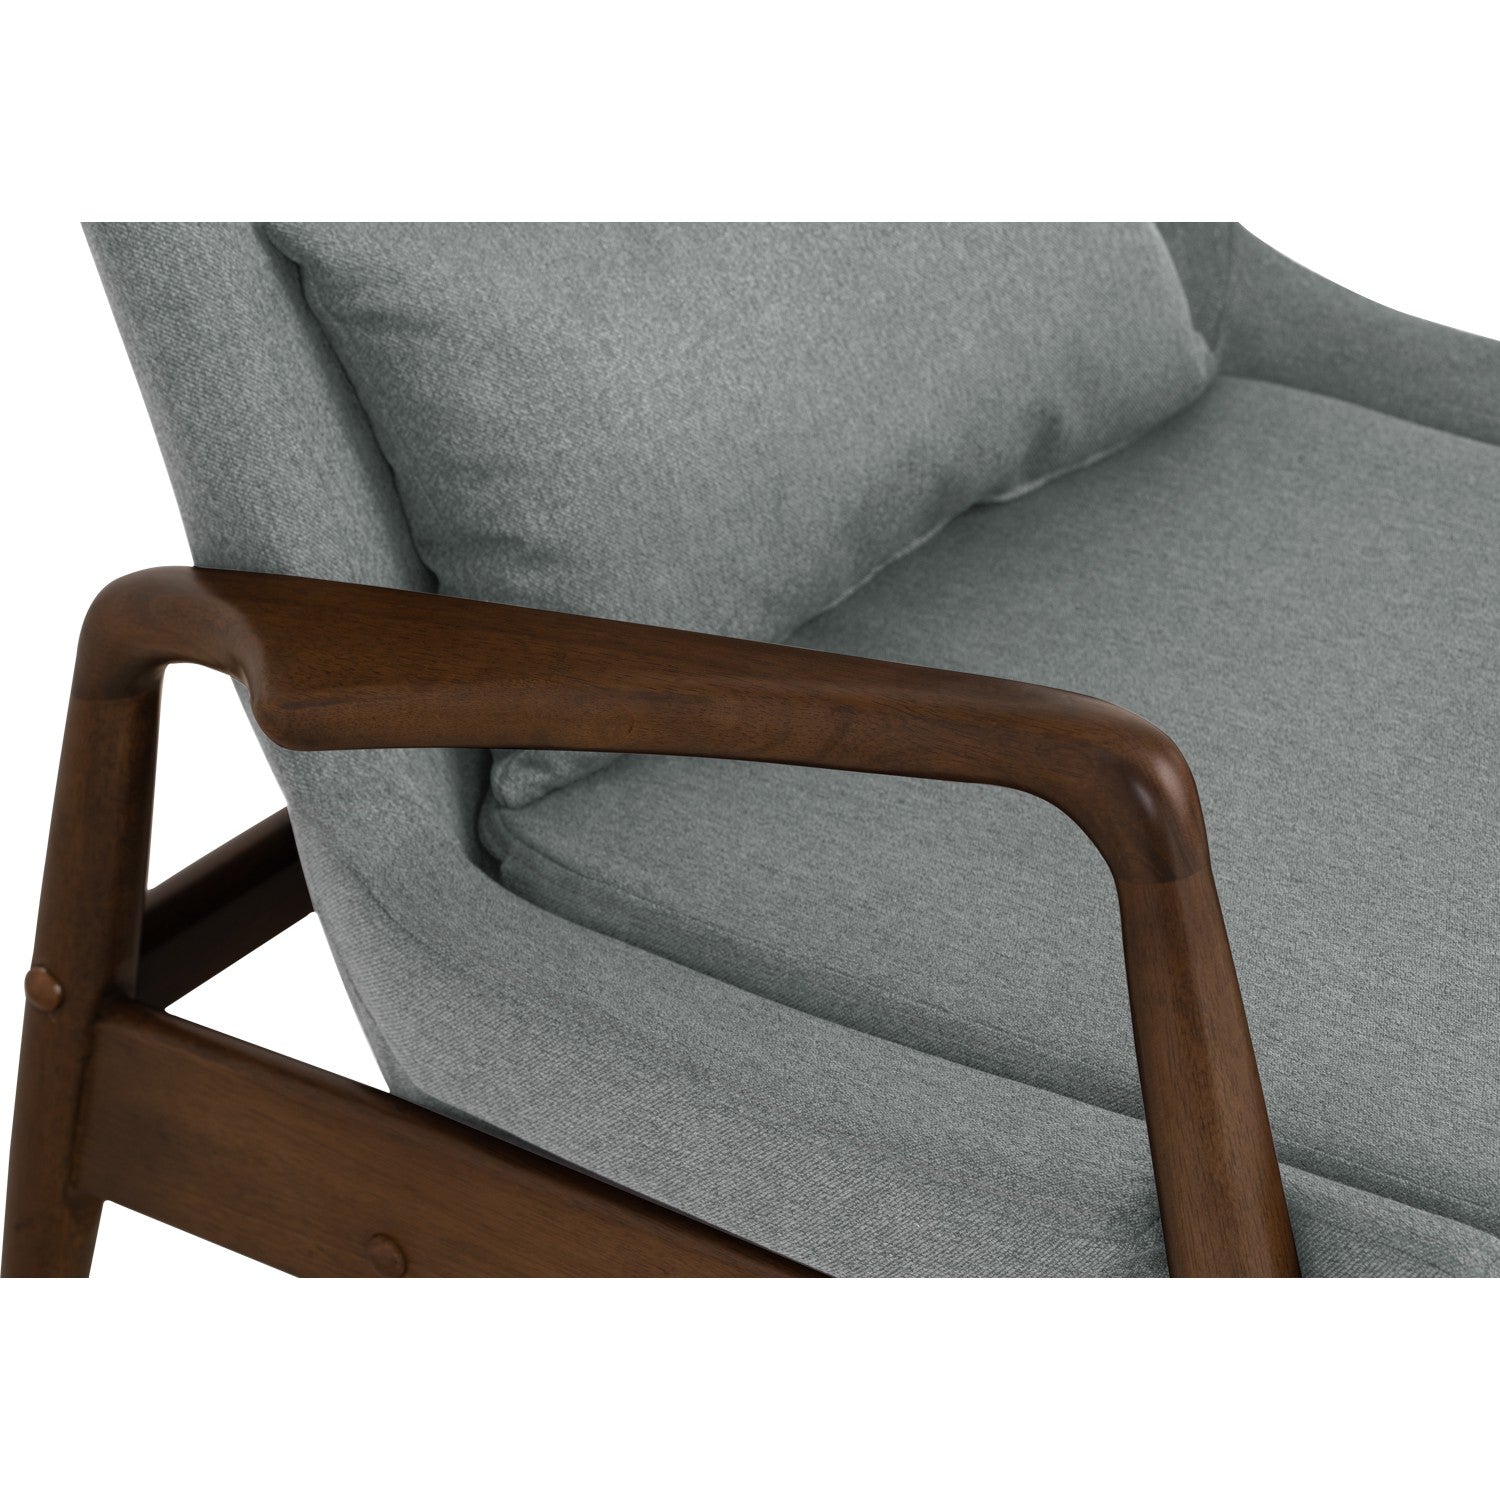 馬來西亞原裝進口實木傢俬 - NZ系列 - SCENIC休閒椅